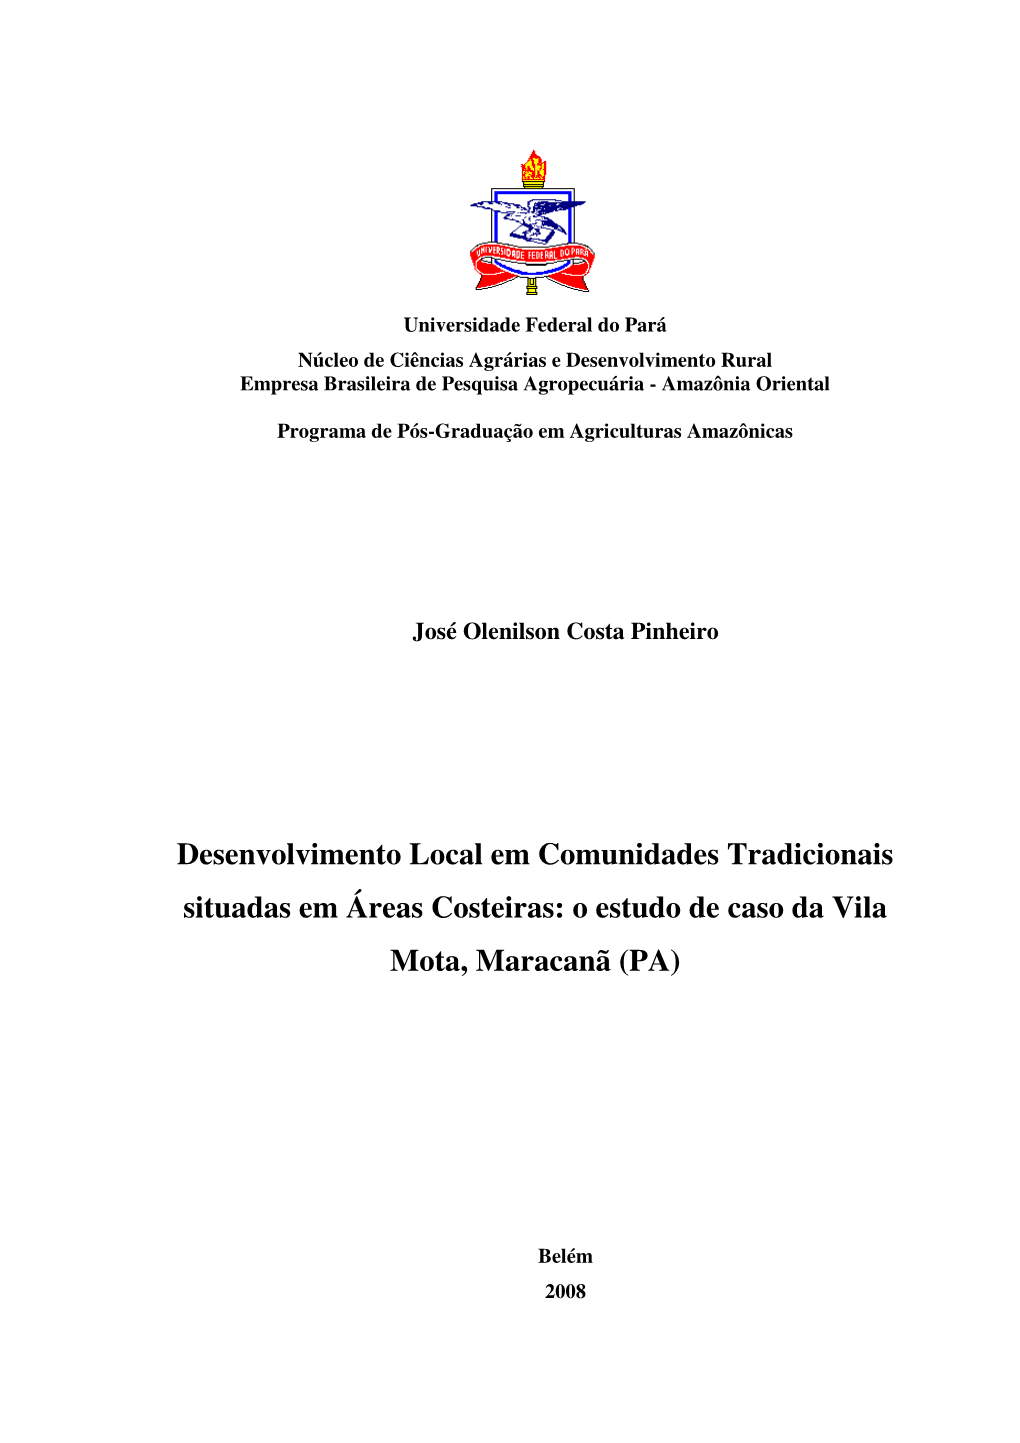 Desenvolvimento Local Em Comunidades Tradicionais Situadas Em Áreas Costeiras: O Estudo De Caso Da Vila Mota, Maracanã (PA)